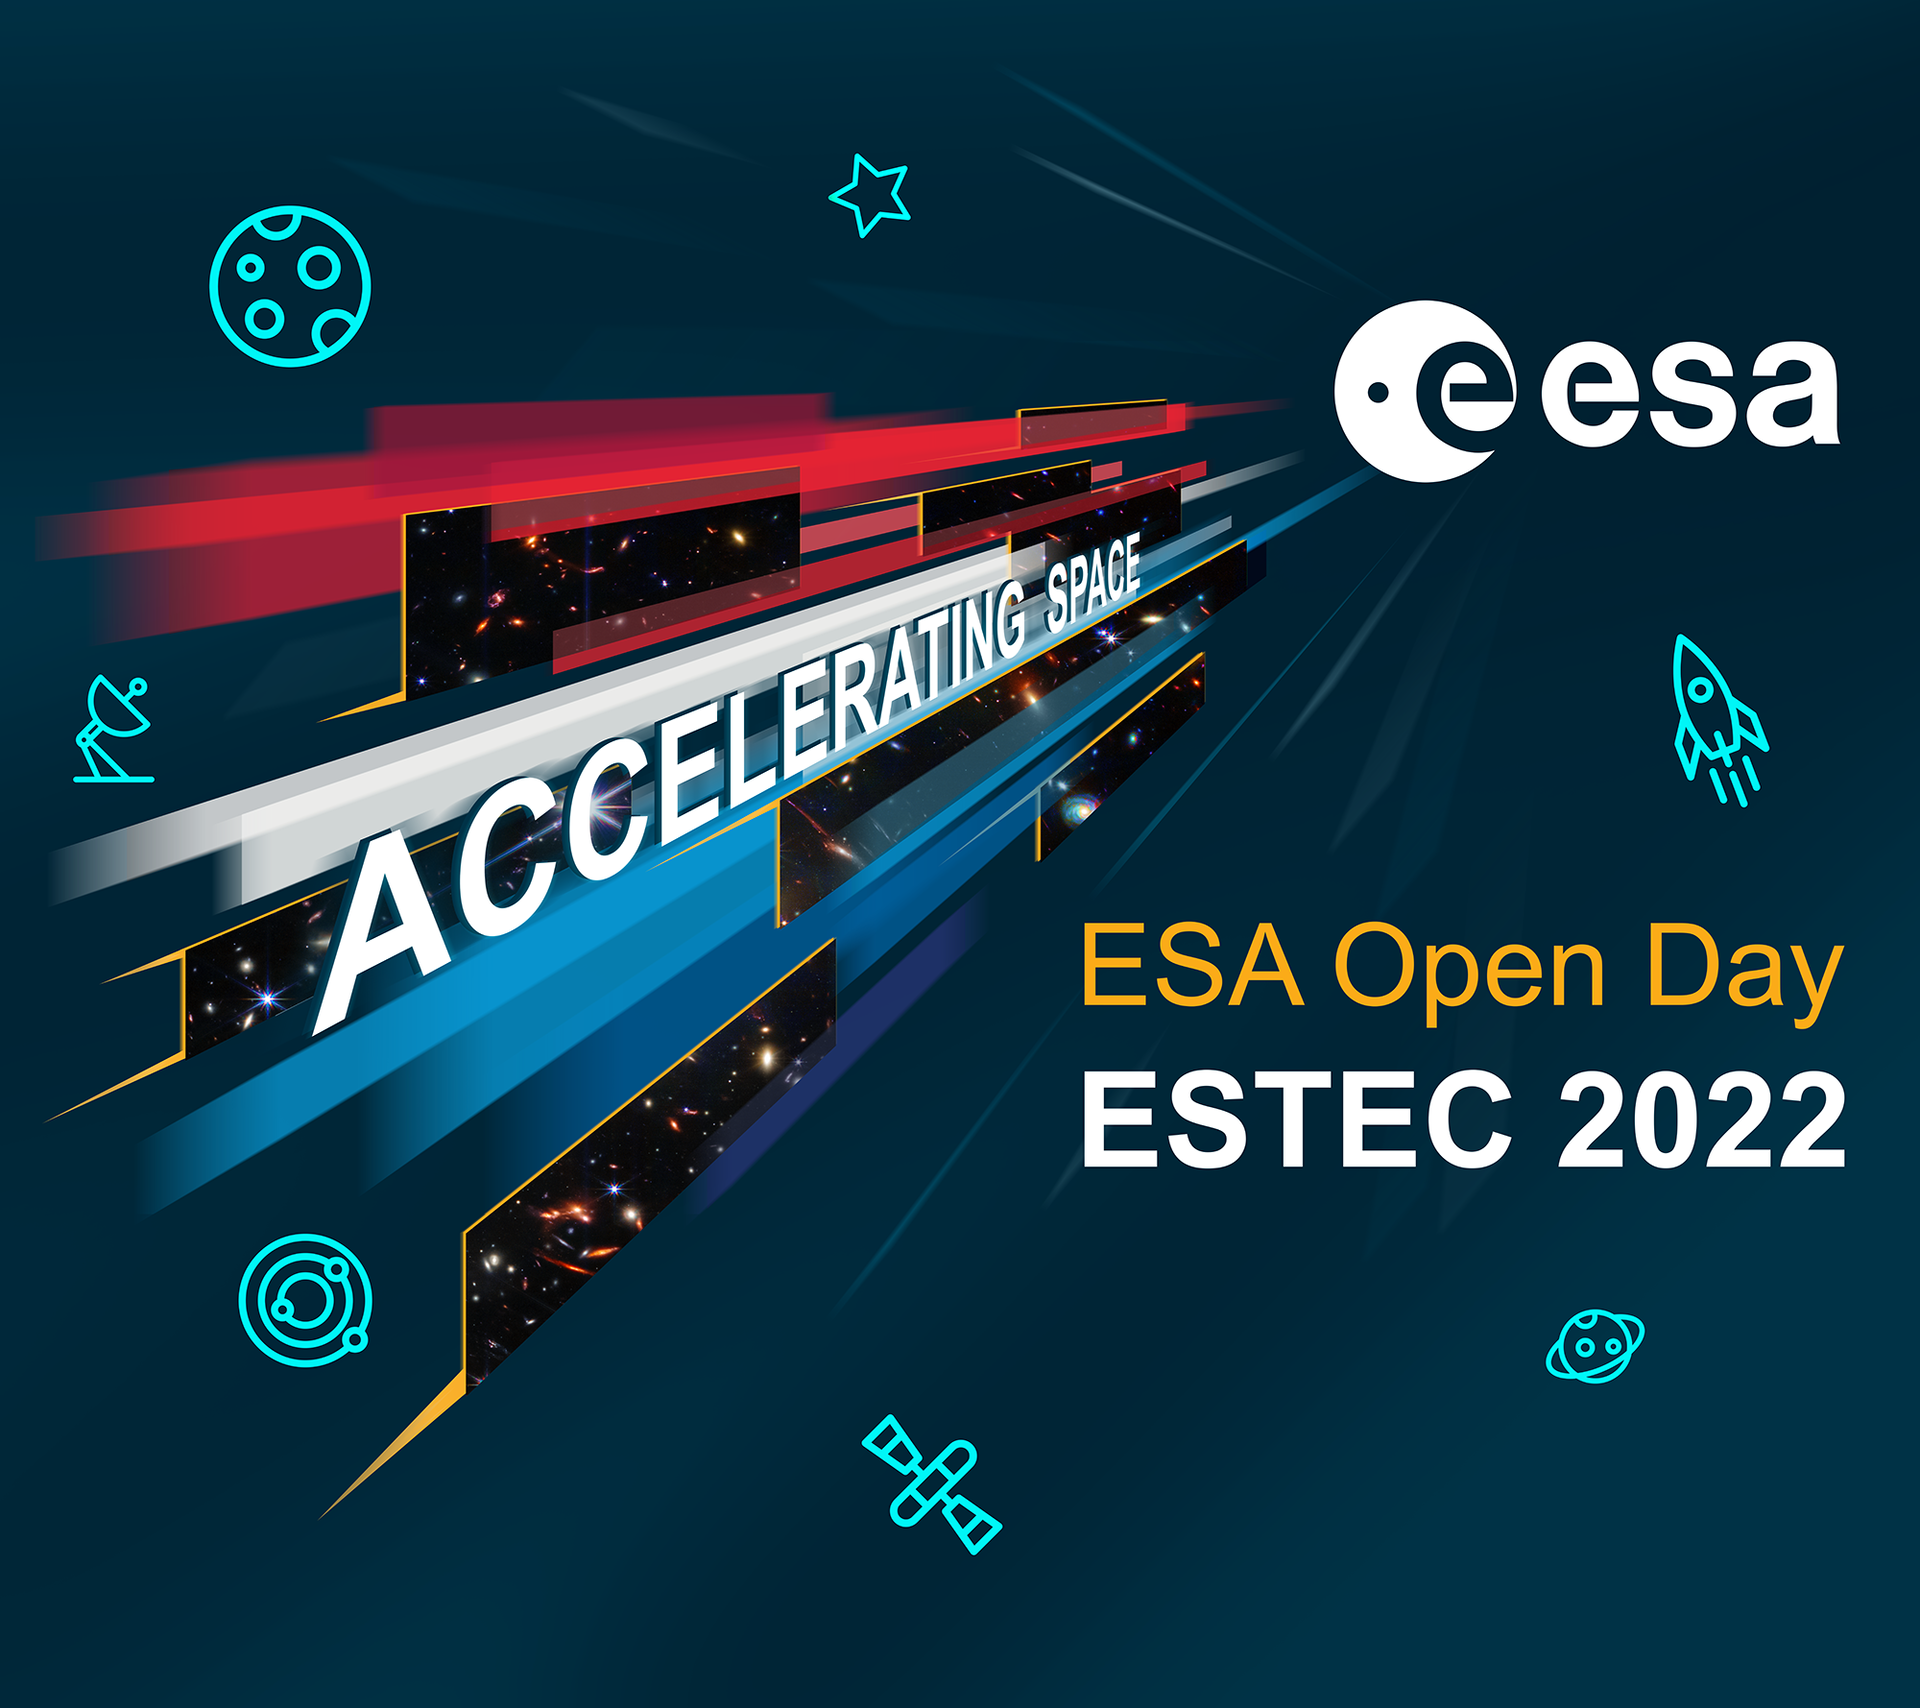 ESA Open Day at ESTEC 2022